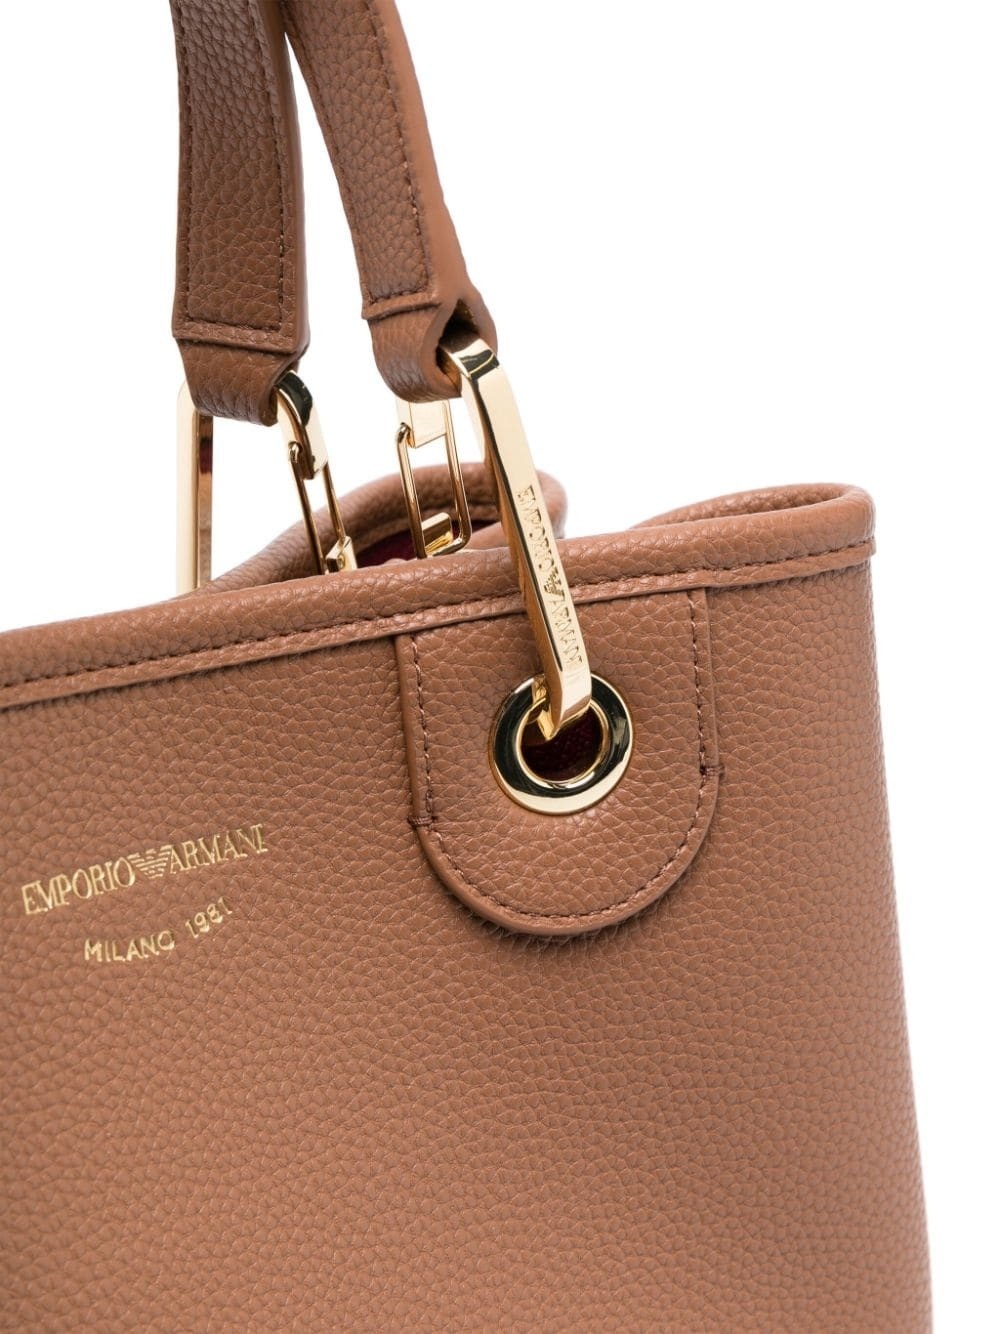 EMPORIO ARMANI - Small Shopping Bag